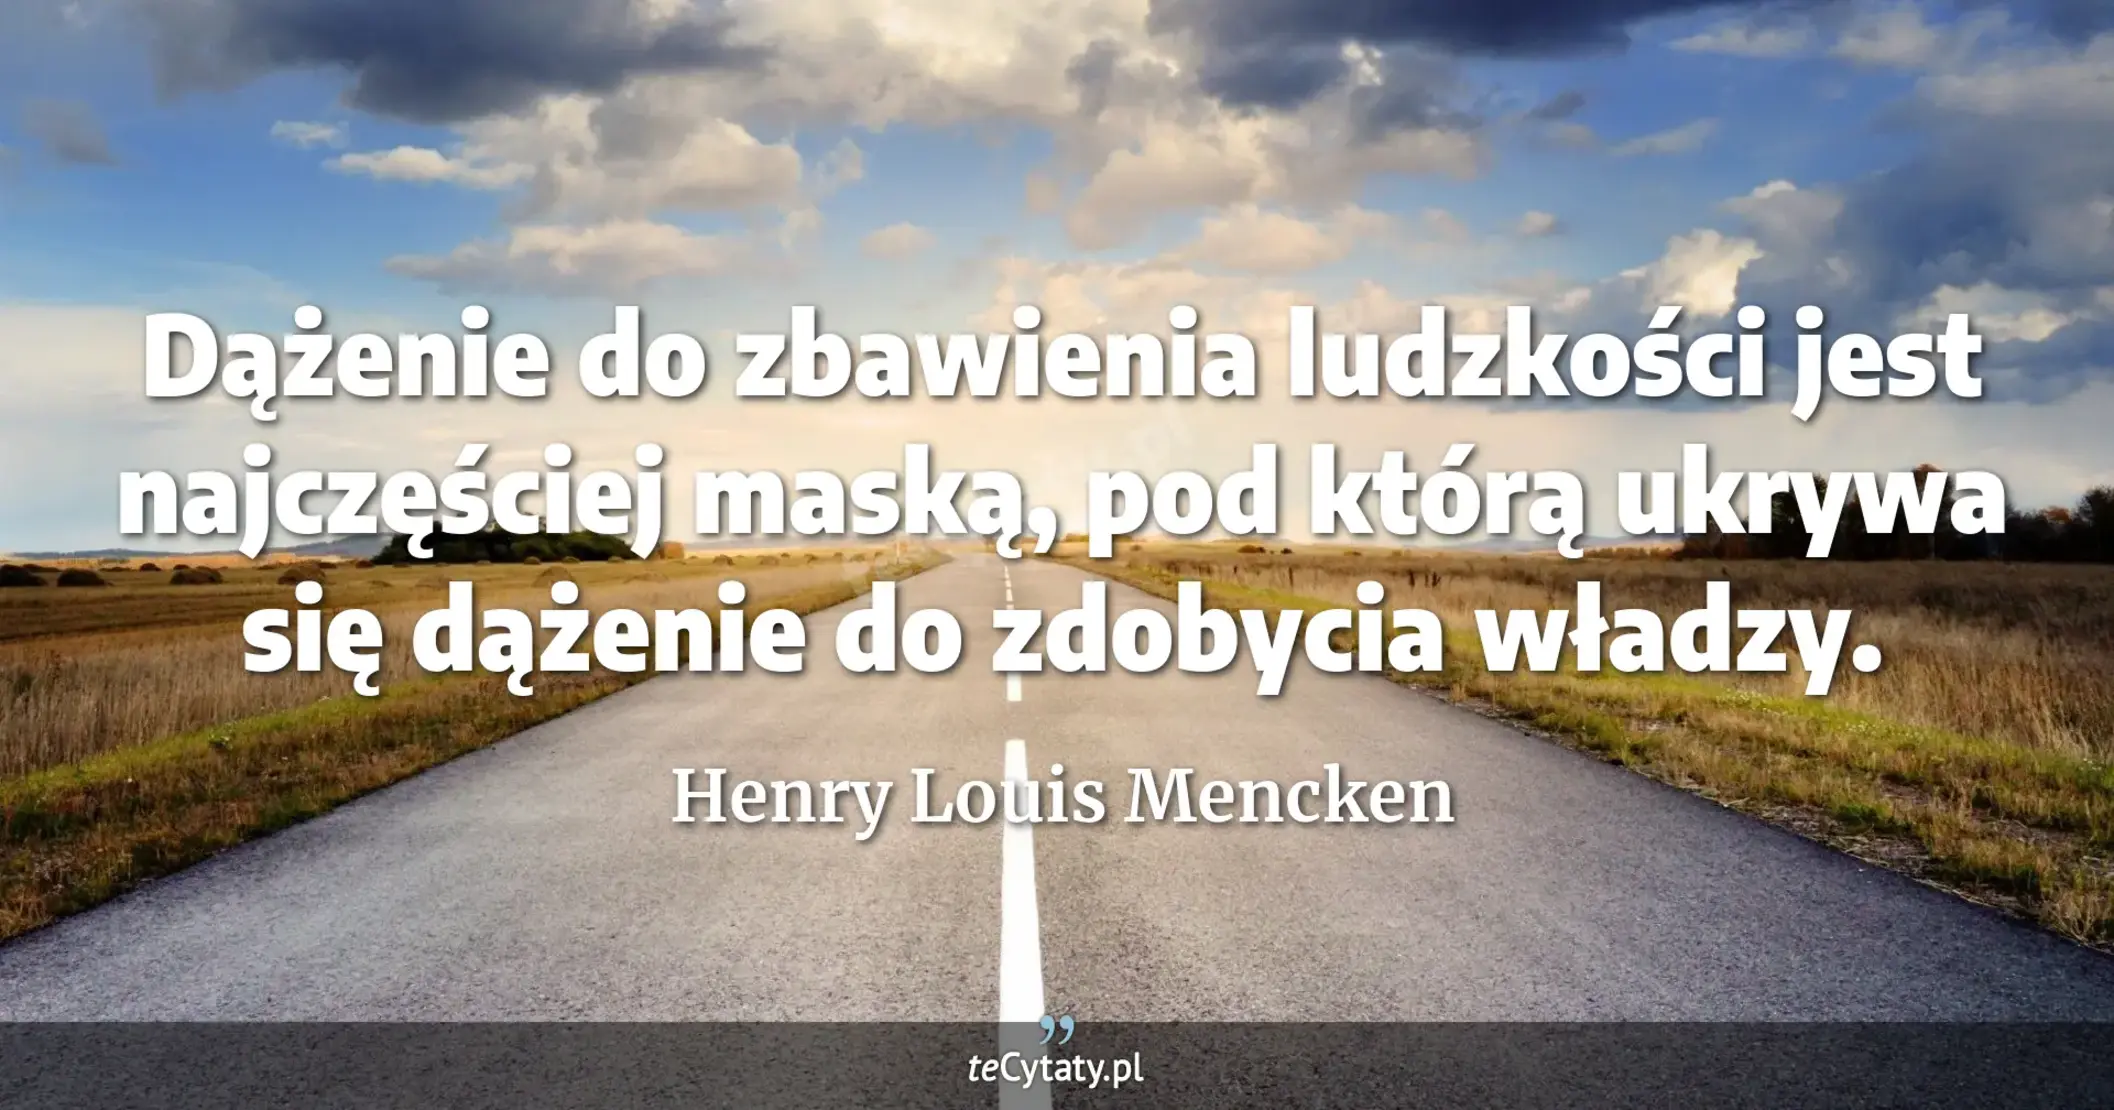 Dążenie do zbawienia ludzkości jest najczęściej maską, pod którą ukrywa się dążenie do zdobycia władzy. - Henry Louis Mencken